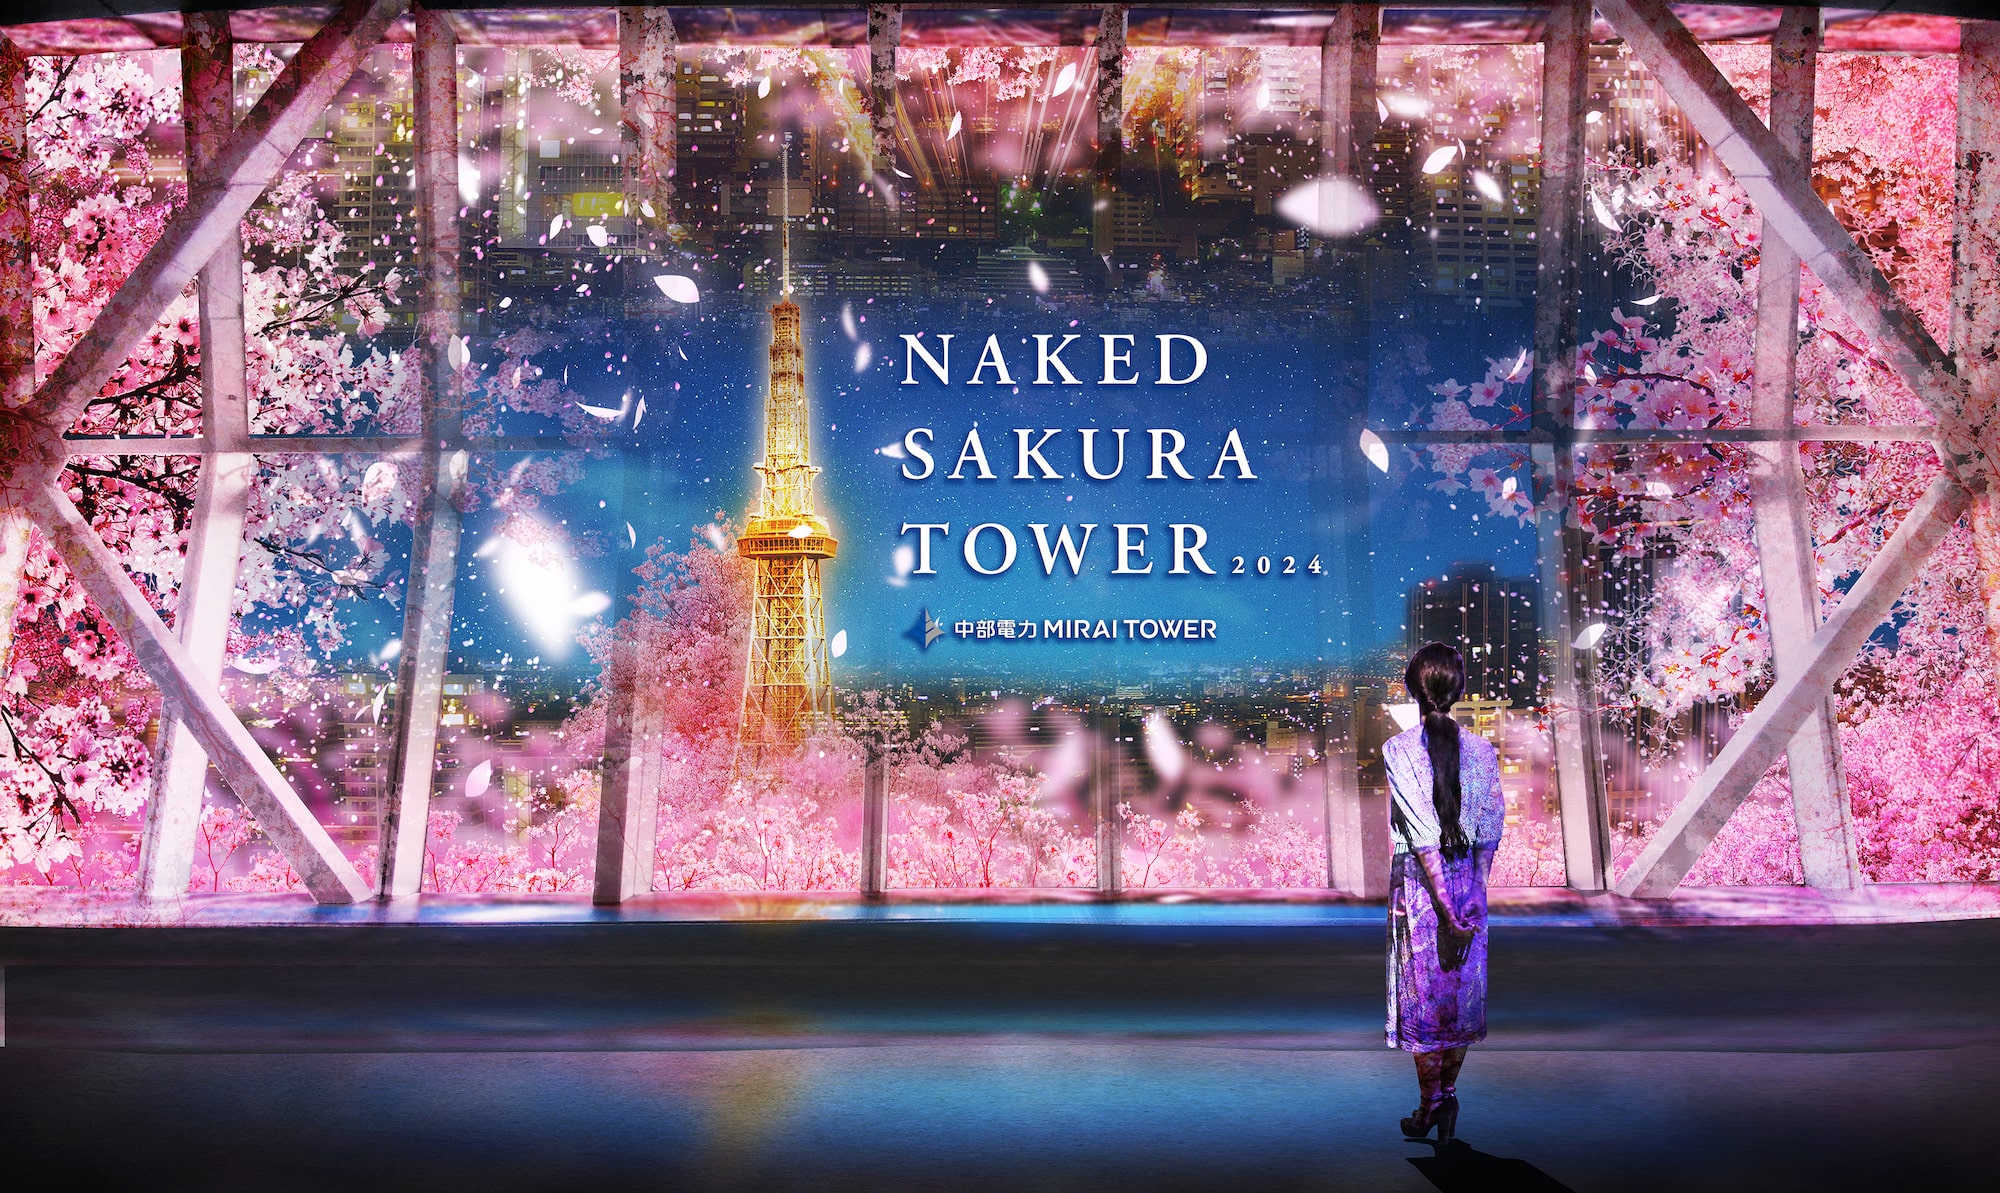 NAKED Sakura Tower